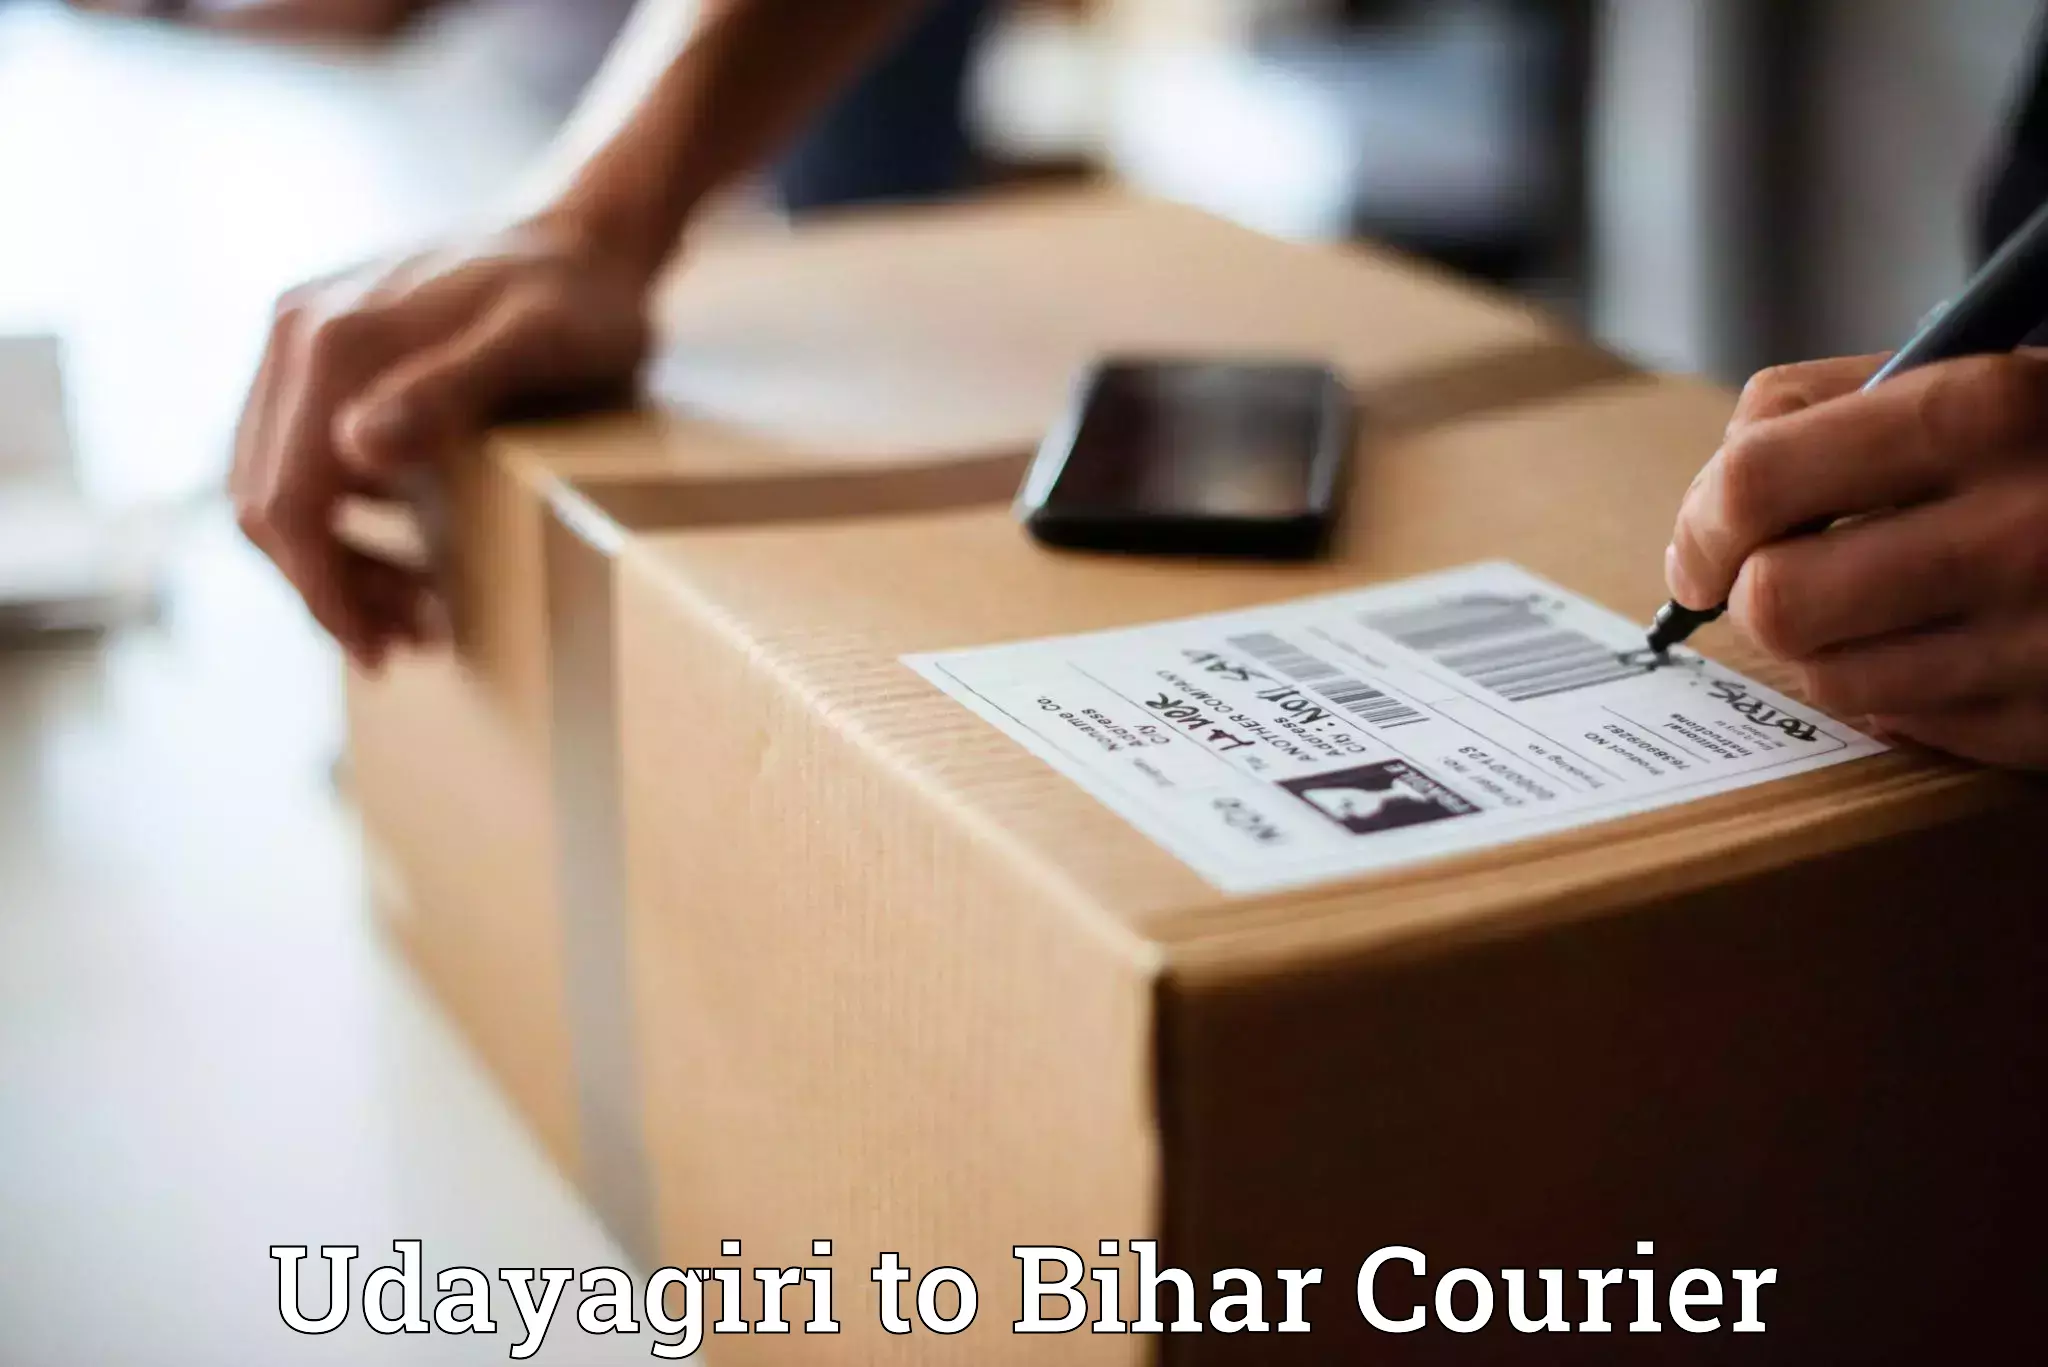 On-call courier service Udayagiri to Dhaka